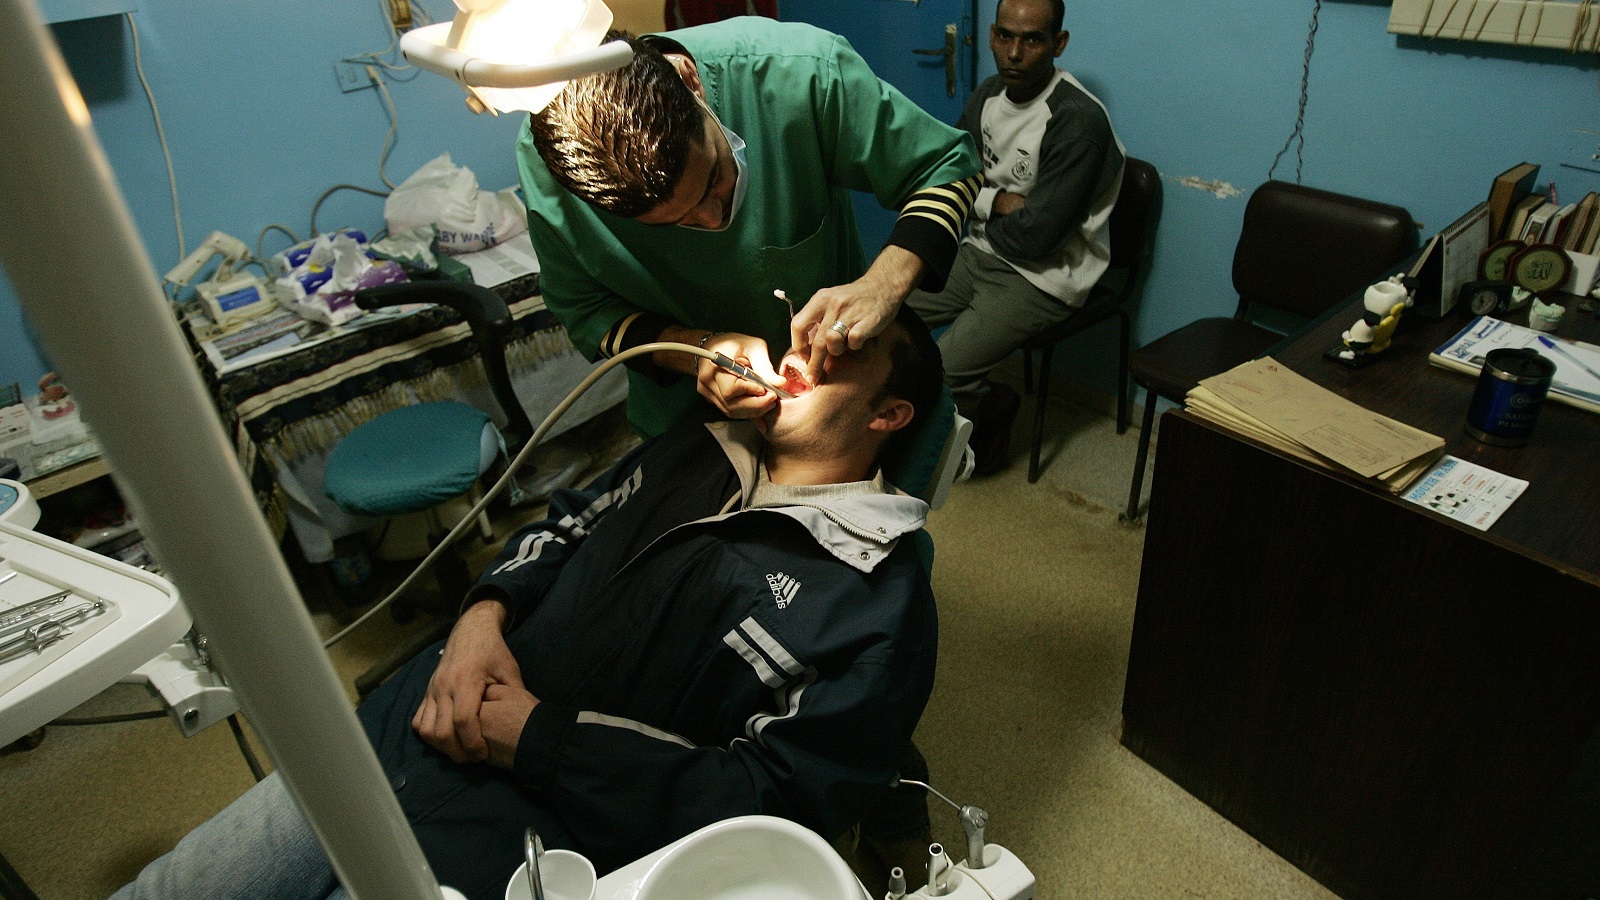 العيادات تقفل والأطباء يهاجرون: اللبنانيون يخسرون أسنانهم